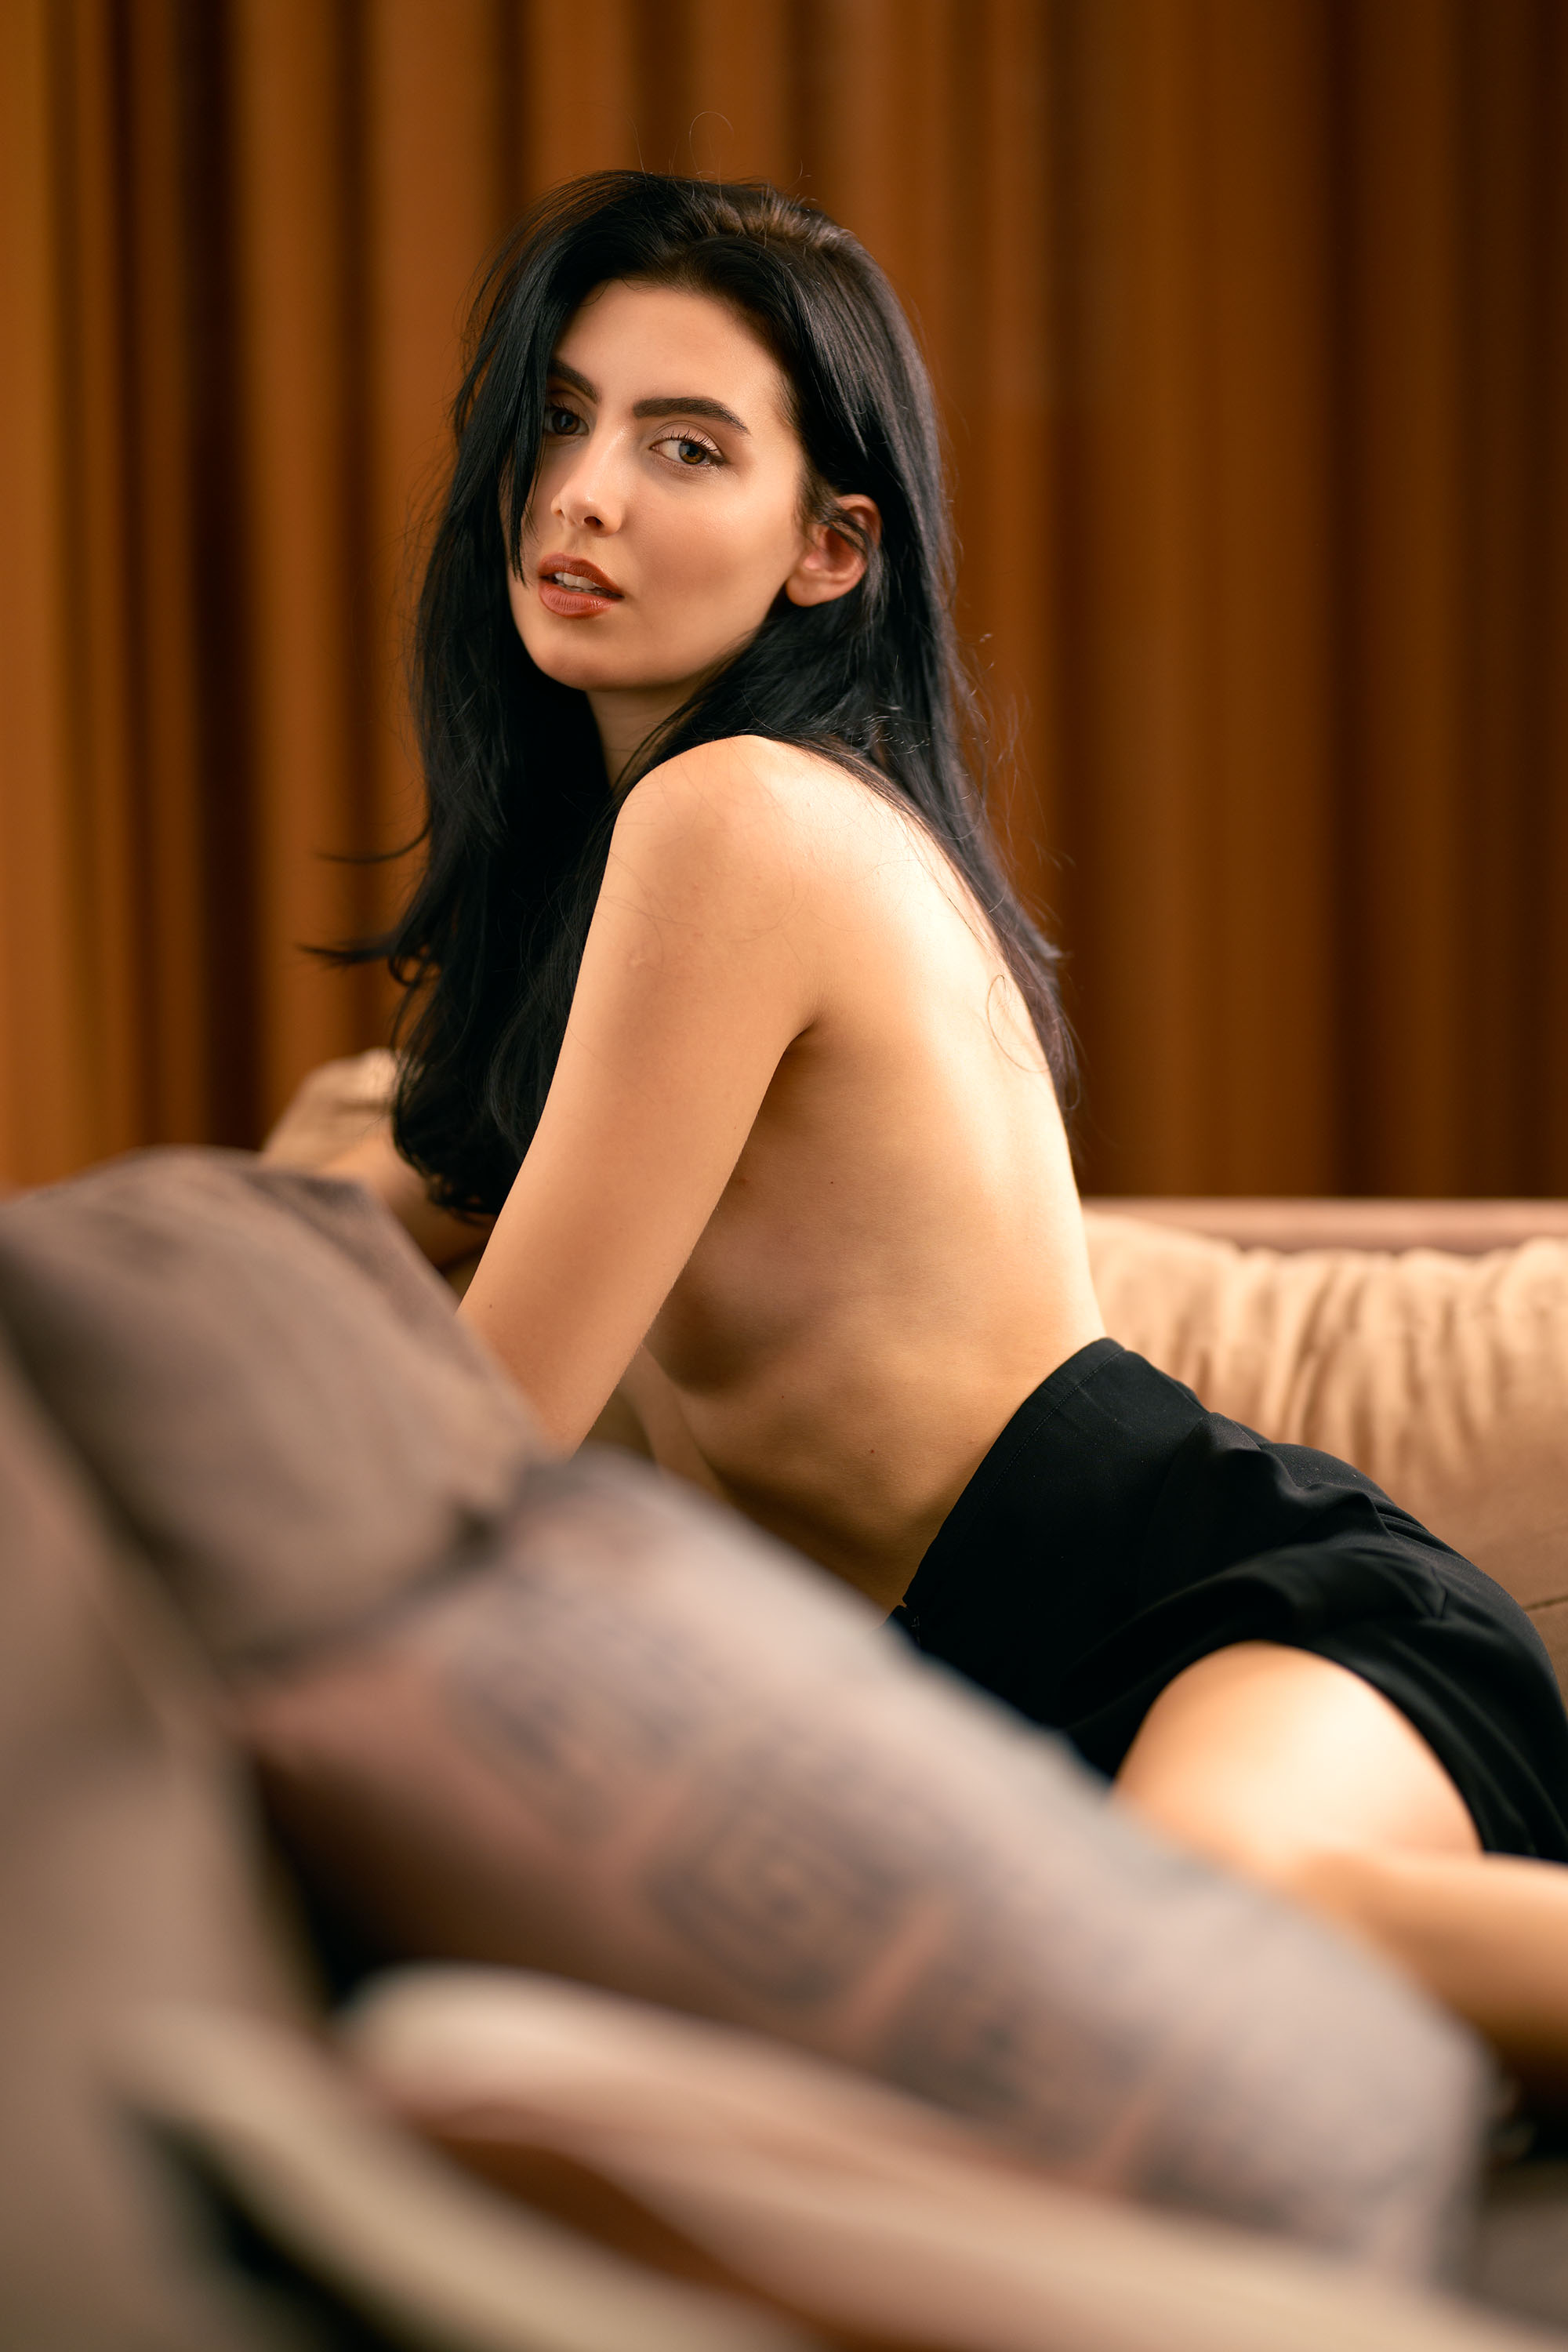 Anastasiia Kravchuk, model from Ukraine at a boudoir photoshoot